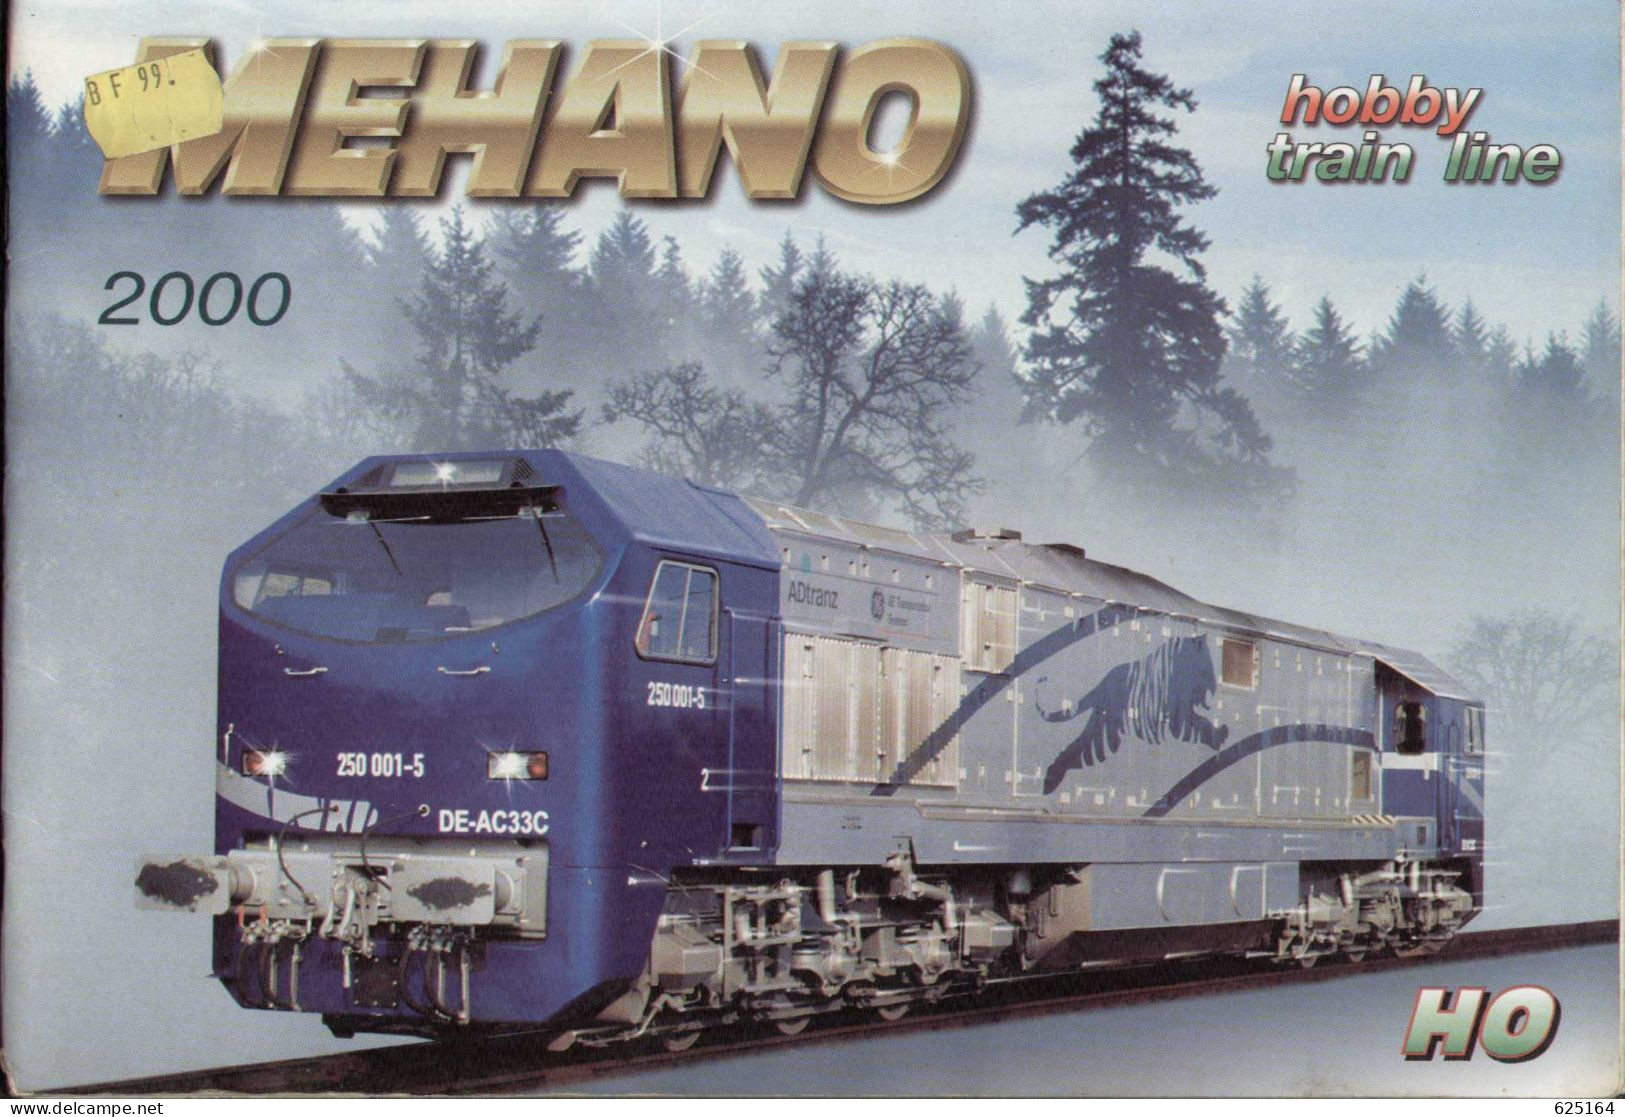 Catalogue MEHANO 2000 HO 1/87 -  Hobby - Train Line - En Slovène, Anglais, Allemand, Italien Et Français - Francese